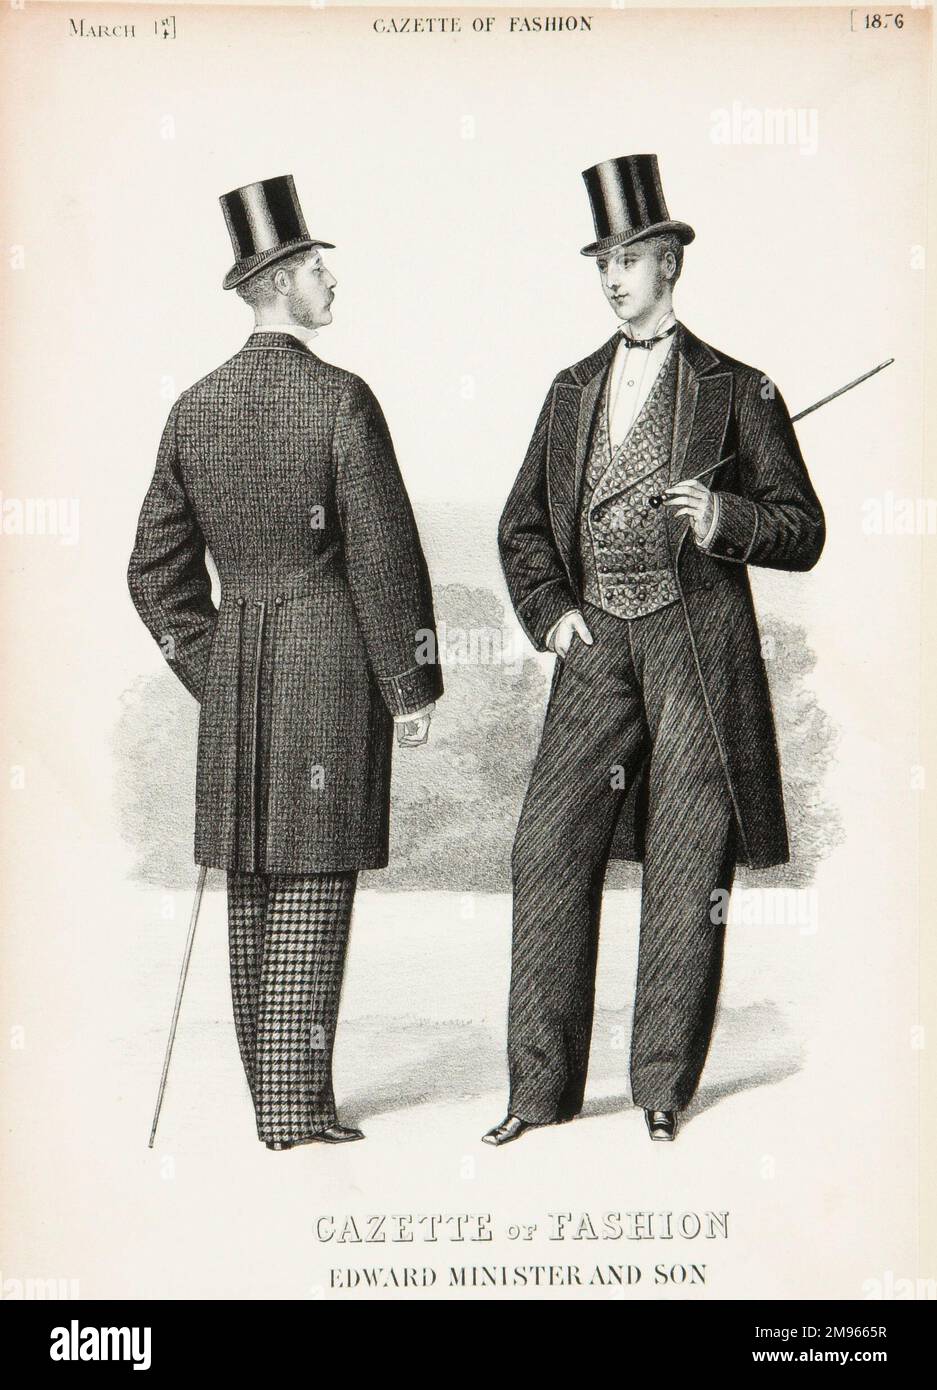 Die neuesten Moden für Männer von Edward Minister and Son, die in der Modezeitschrift zu sehen sind. Die beiden Männer tragen Schwanzmäntel, Seidenhüte, zweireihige Westen und Gehstöcke. Stockfoto